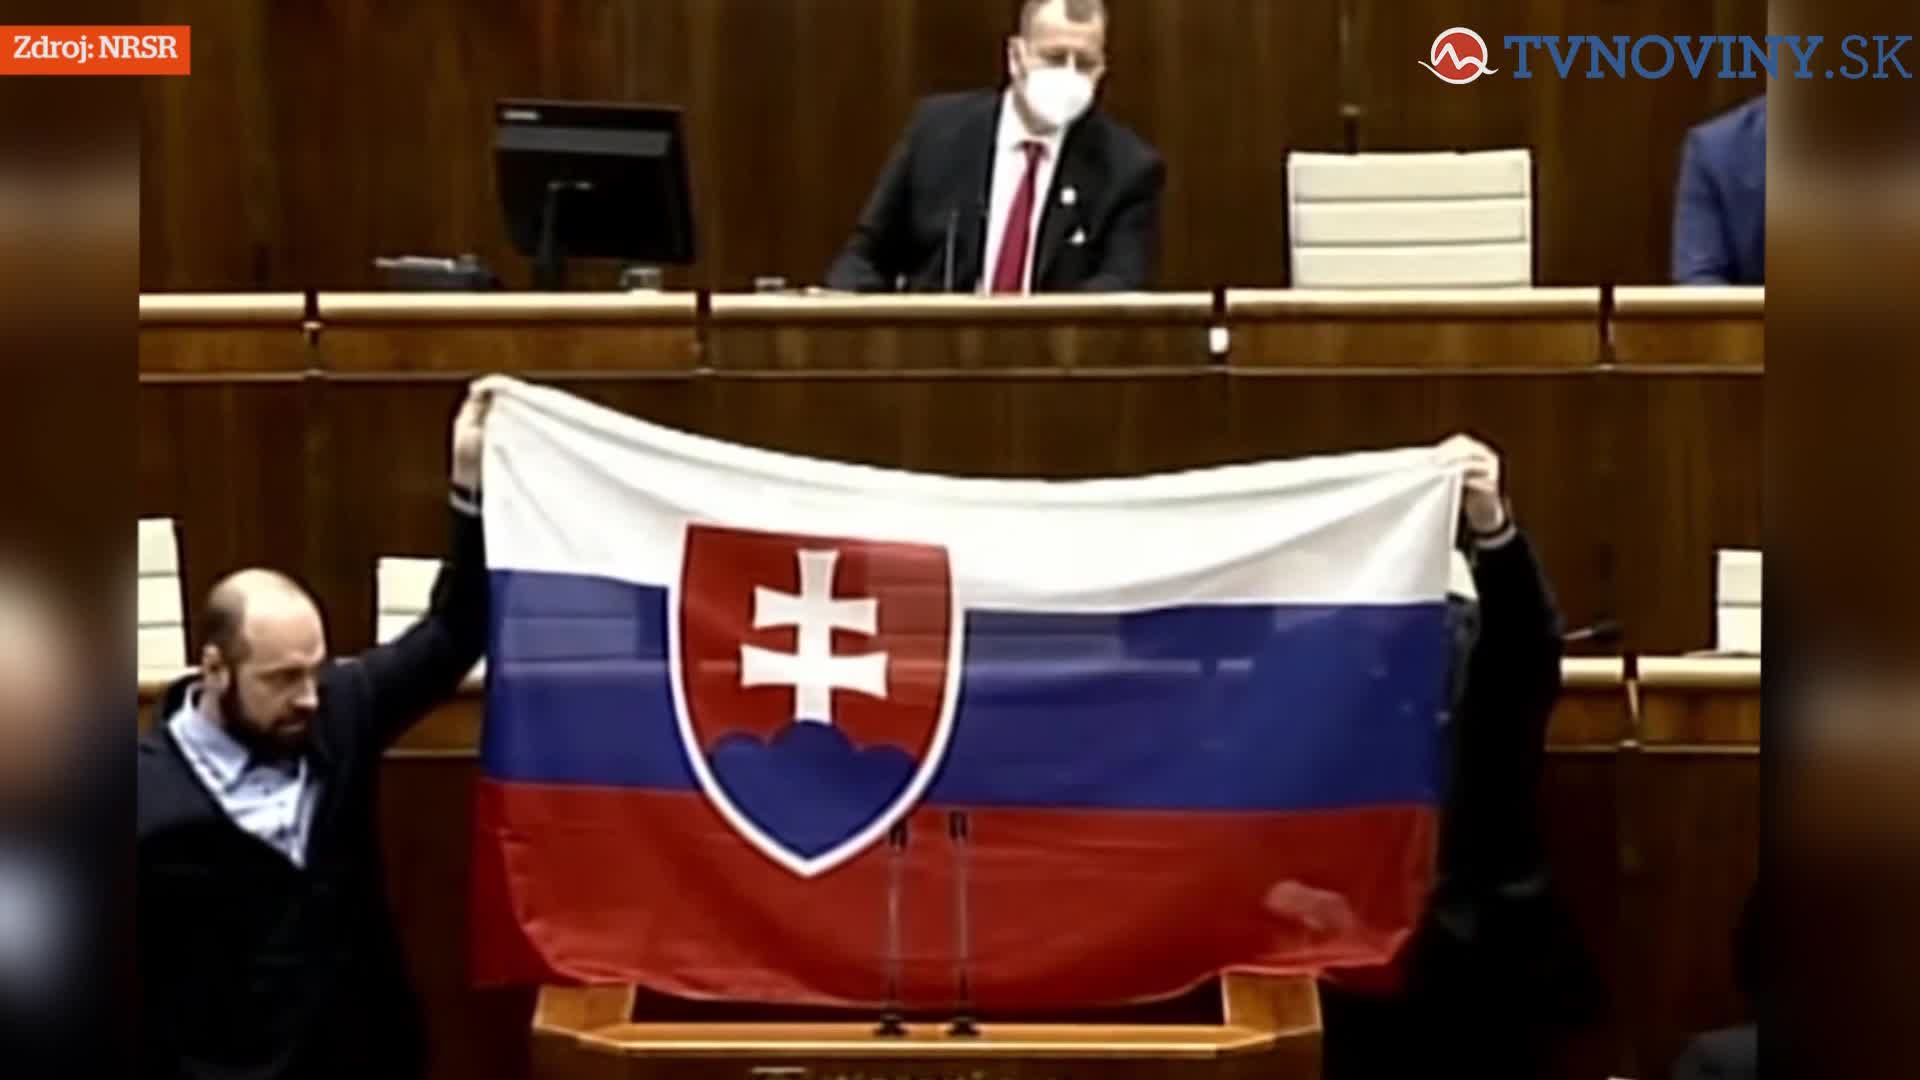 Potyčka ve slovenském parlamentu. Poslanci se rvali kvůli vlajce Ukrajiny